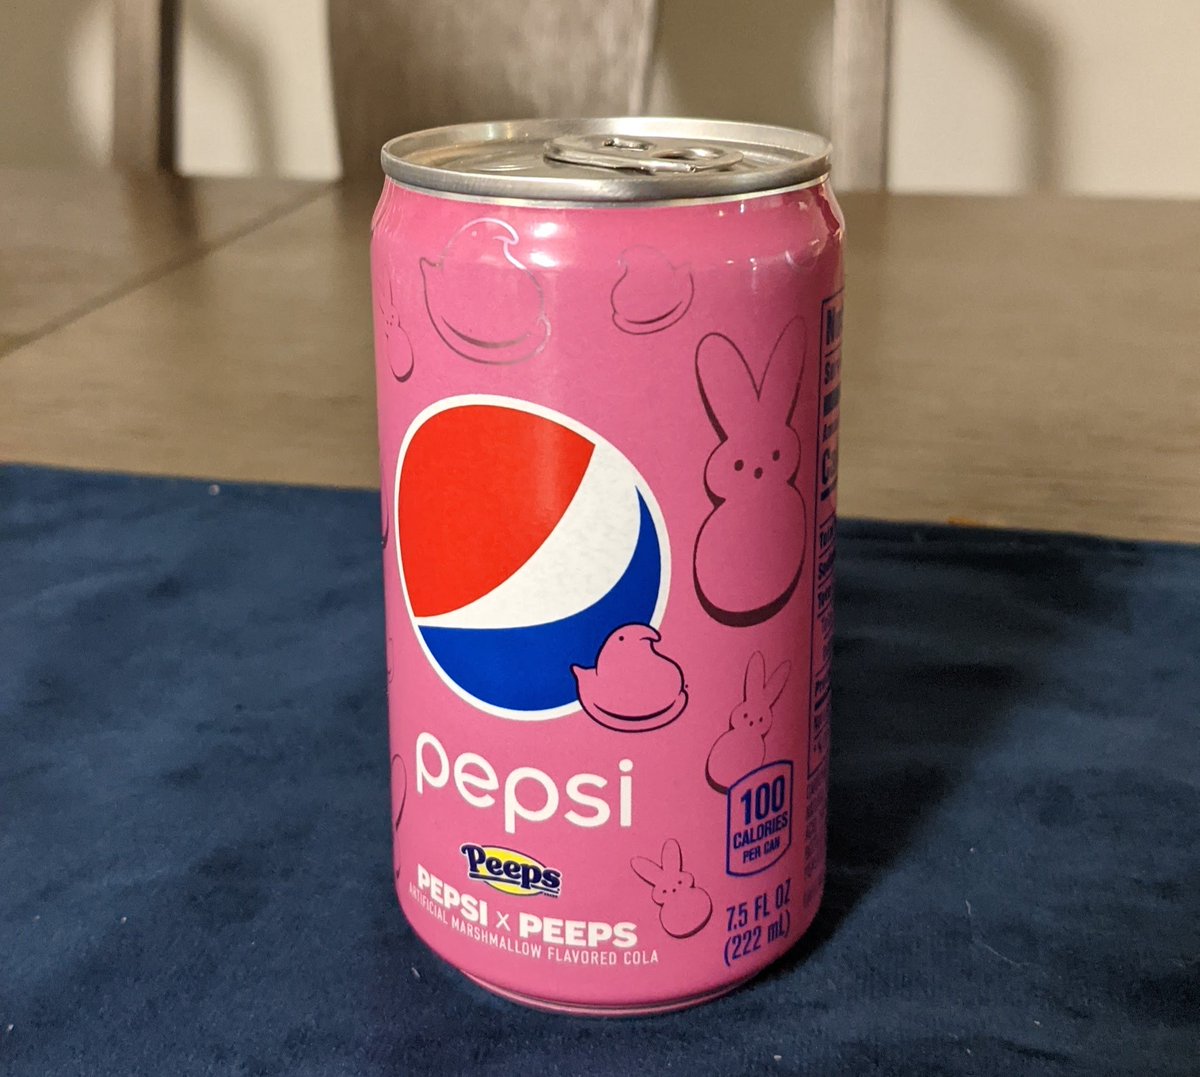 @pepsi @SHAQ @TheShoeSurgeon @reeboks My favorite @pepsi Mini can of course HAS to be when I got this peeps Pepsi 😏

#PepsiMinis #Sweepstakes